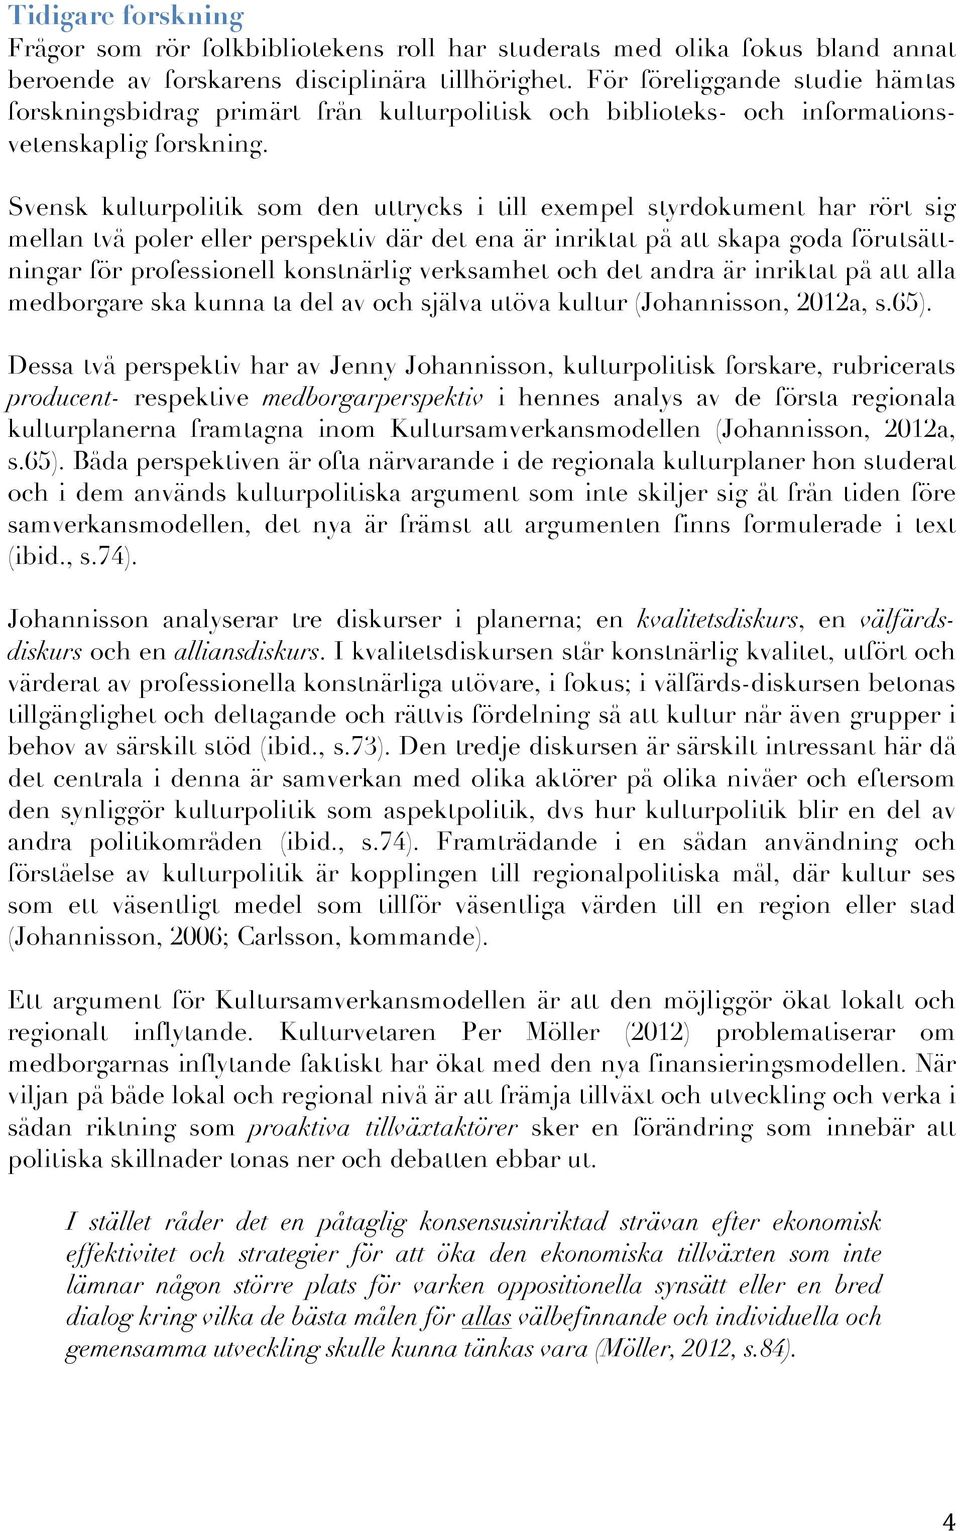 Svensk kulturpolitik som den uttrycks i till exempel styrdokument har rört sig mellan två poler eller perspektiv där det ena är inriktat på att skapa goda förutsättningar för professionell